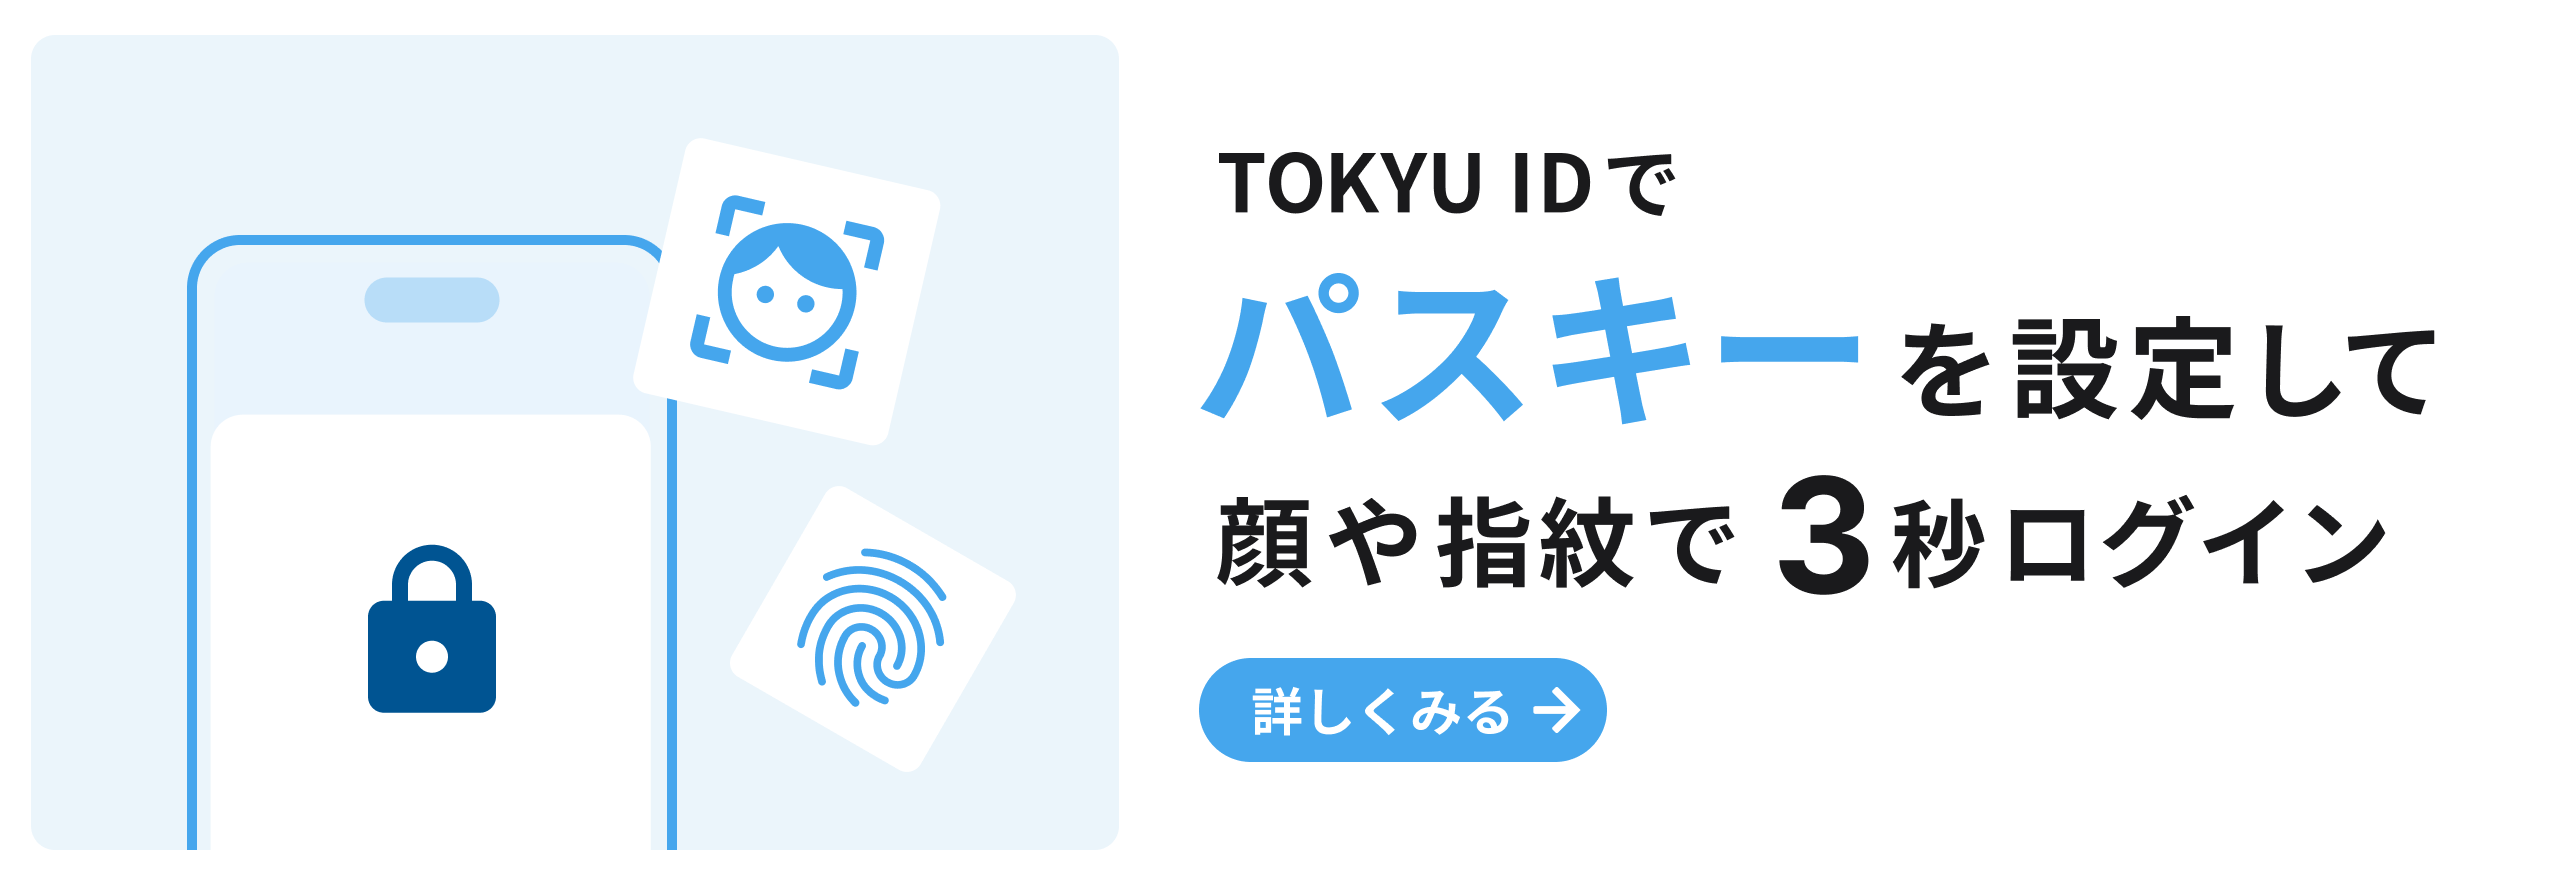 TOKYU IDでパスキーを設定して顔や指紋で3秒ログイン